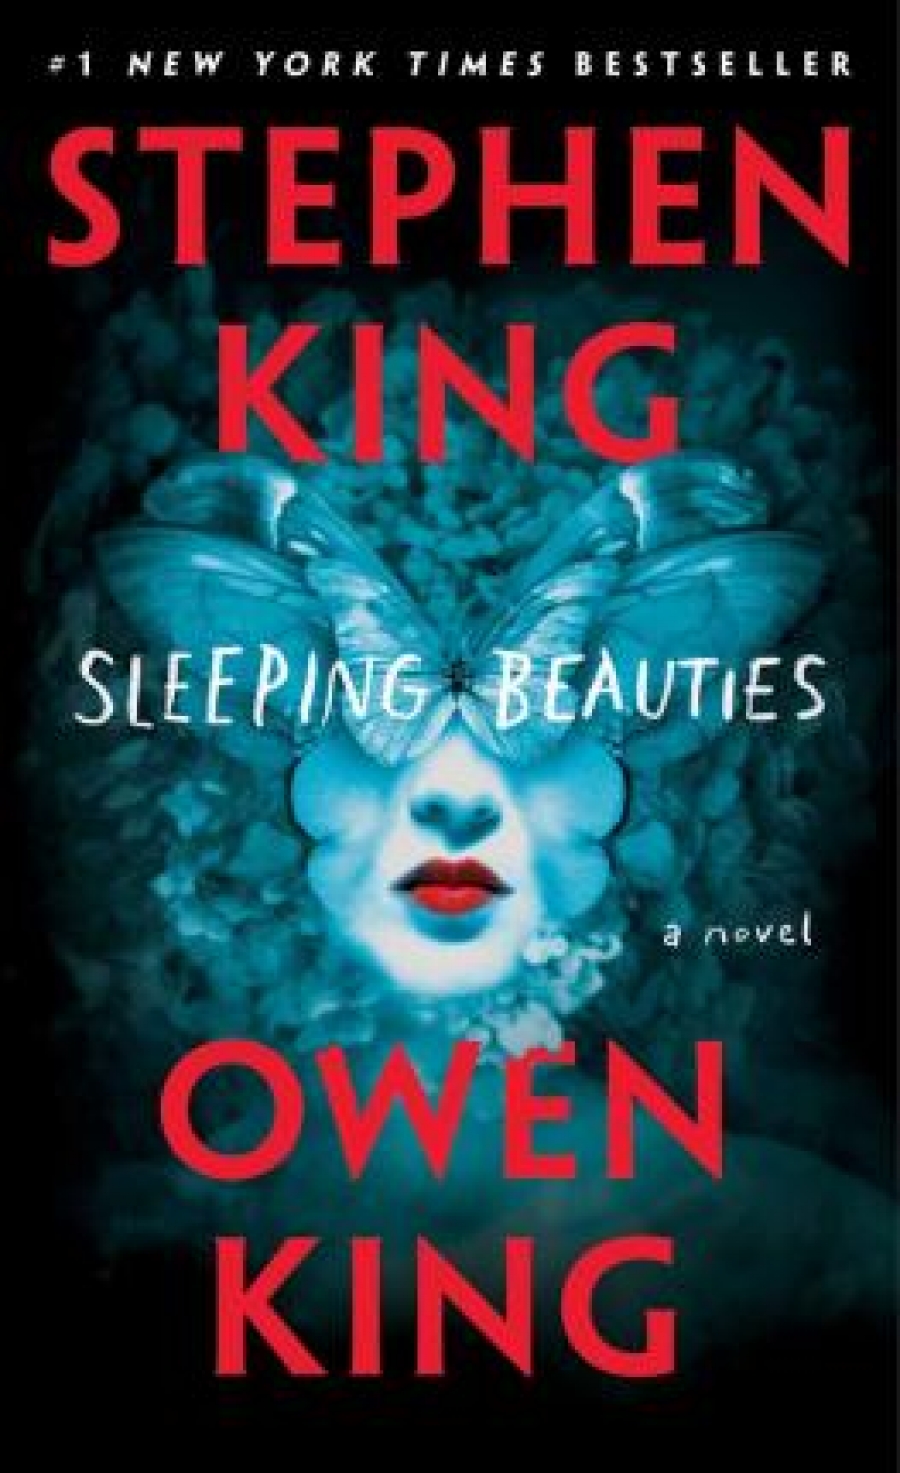 King Stephen, King Owen Sleeping Beauties 